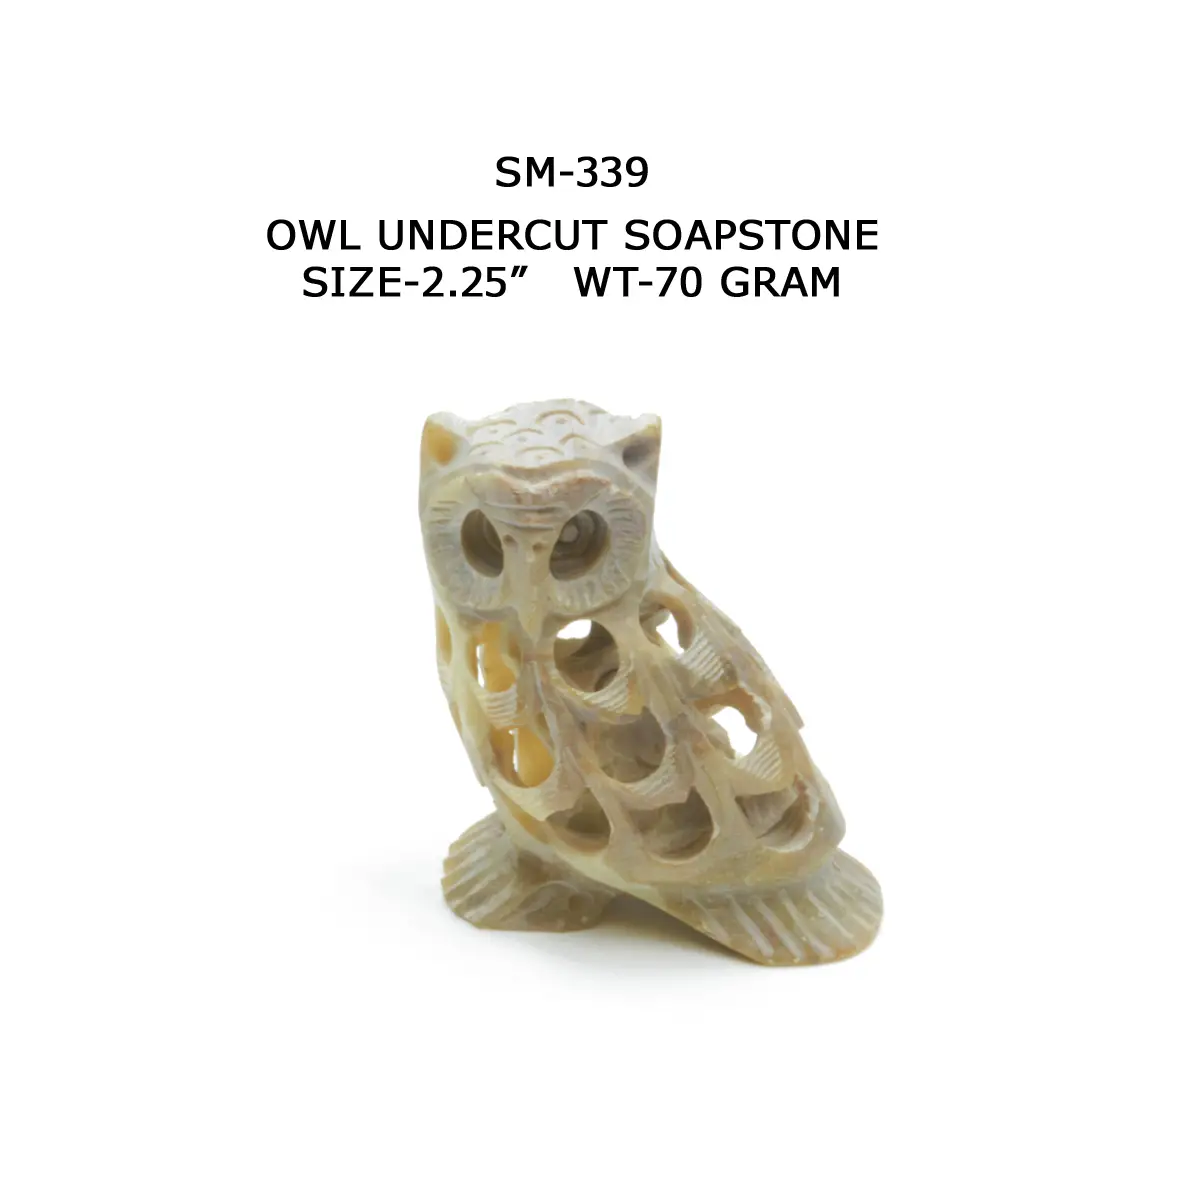 OWL UNDERCUT SOAPSTONE